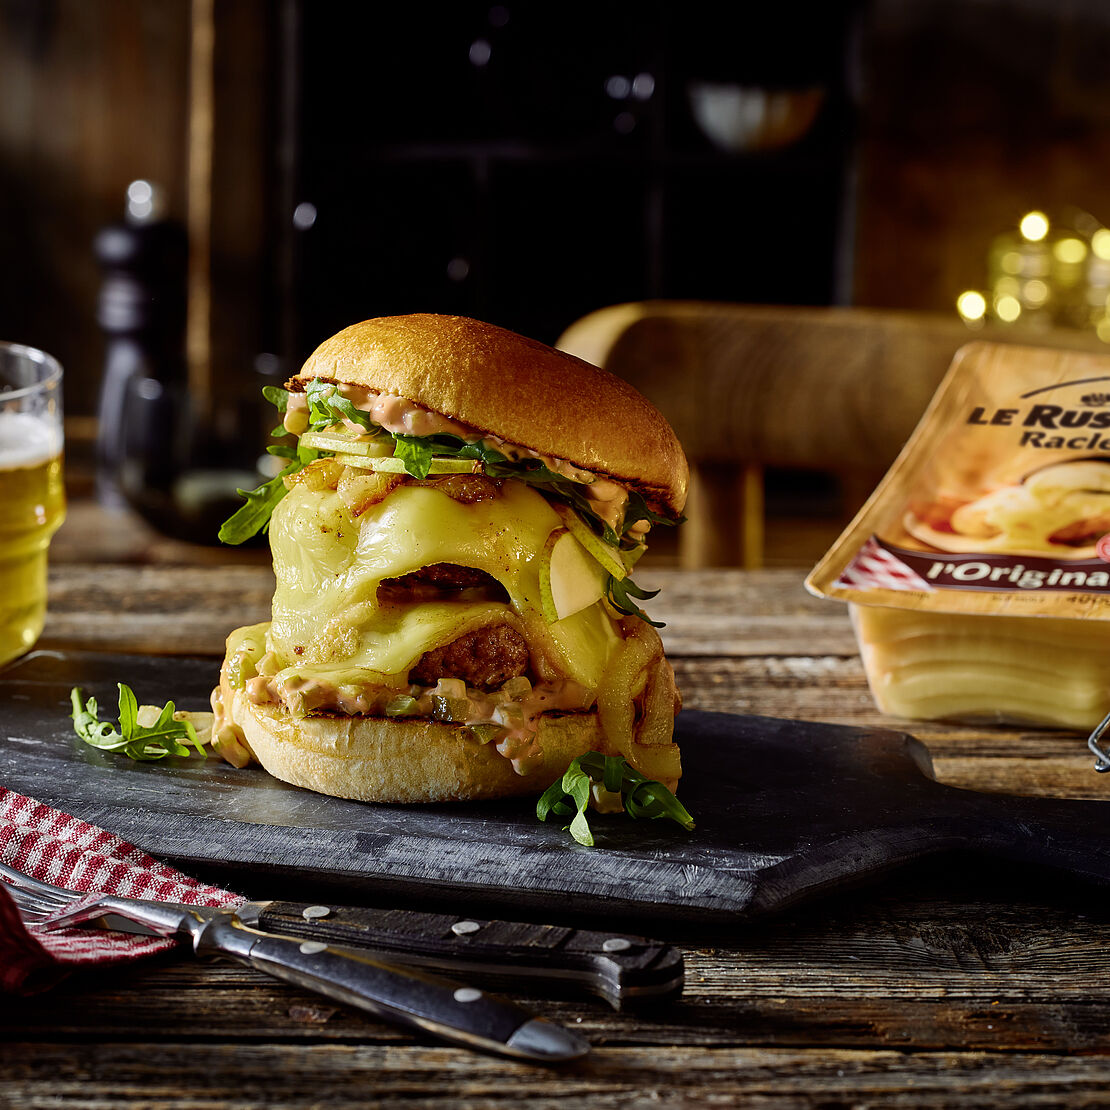 Großer Burger mit Raclette-Käse in einem Brioche-Brötchen serviert auf einer Schieferplatte